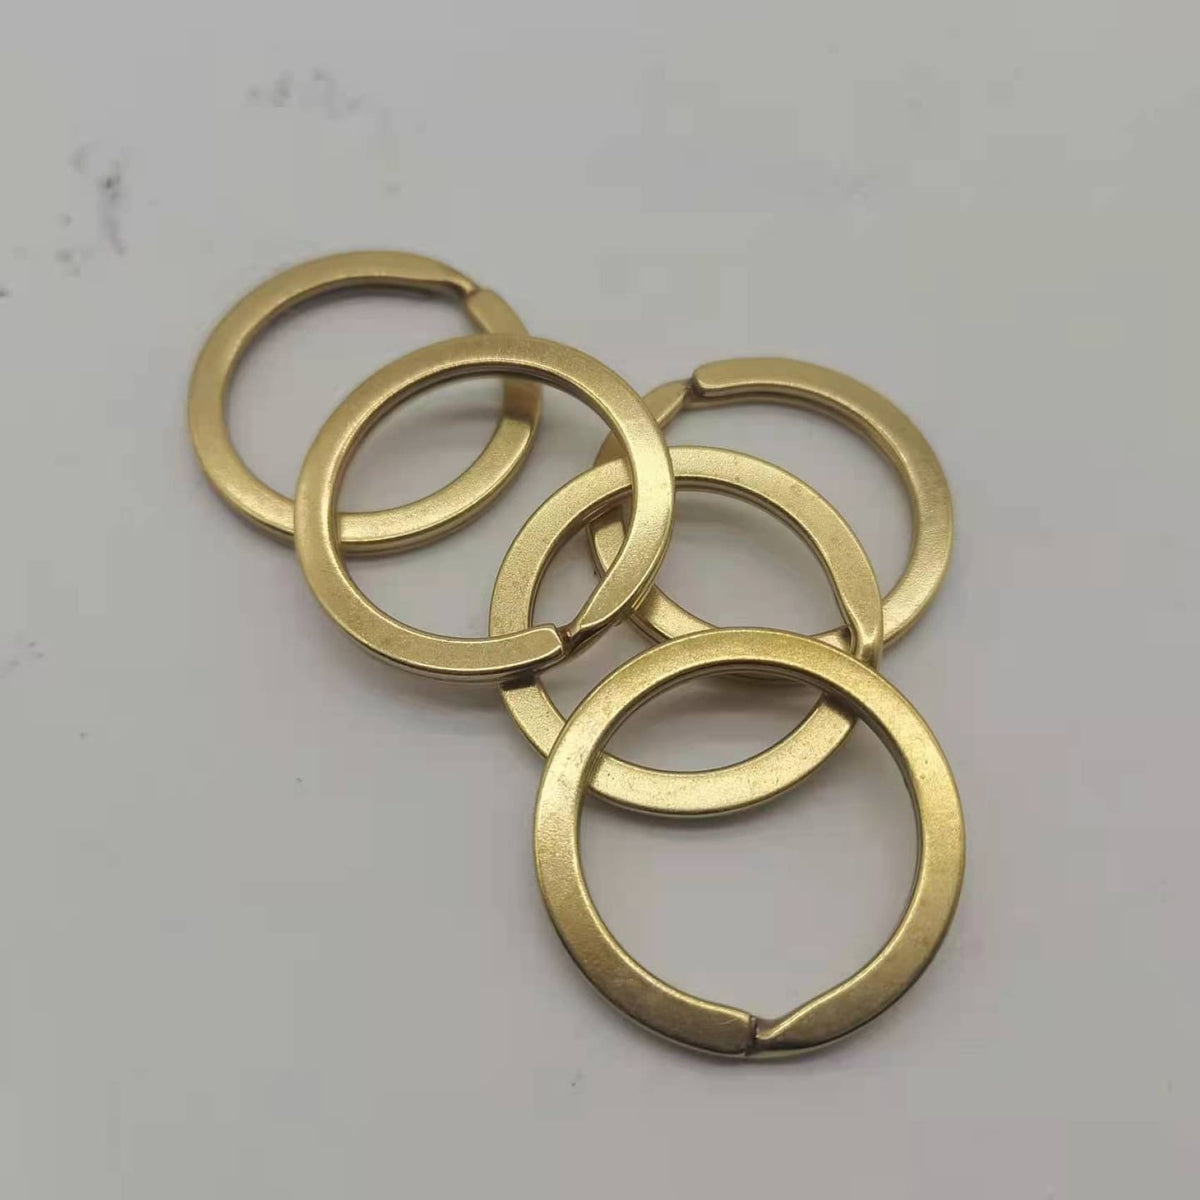 http://www.metal-field.com/cdn/shop/products/preimium-solid-brass-split-key-ring-connectors-flat-keyrings-65-keyring-connector-copper-rings-metal-field-shop-922_1200x1200.jpg?v=1682567328